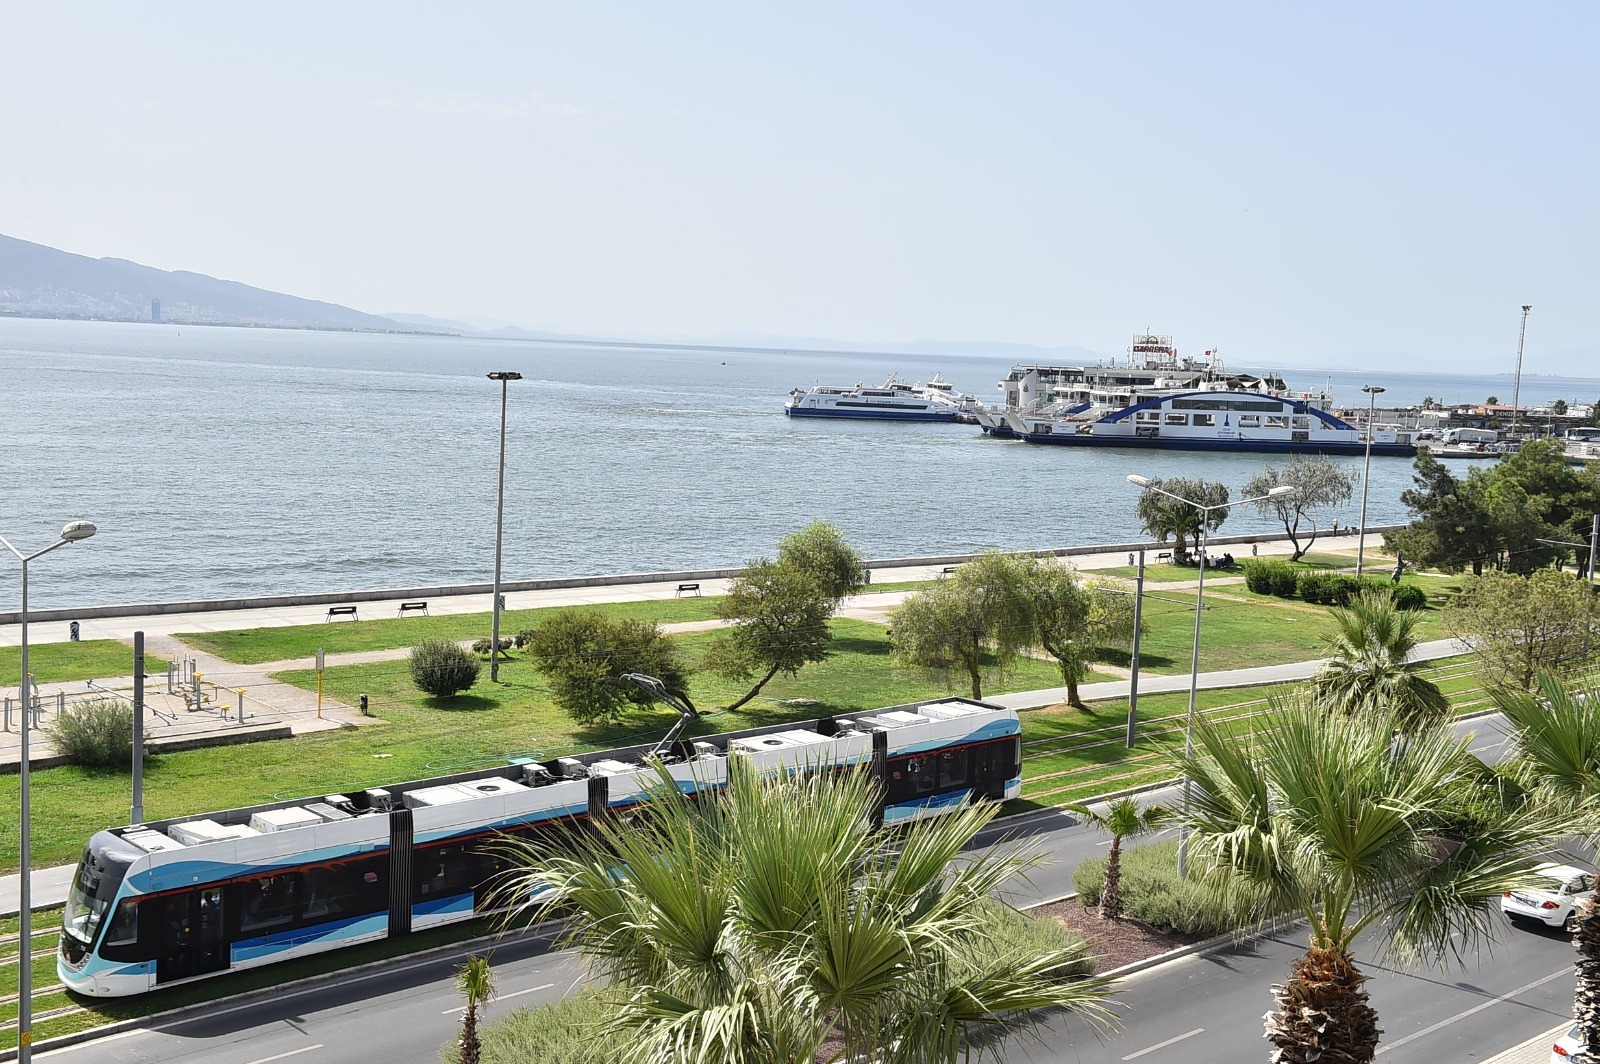 Proje ihalesi 20 Ağustos’ta, Örnekköy’e de tramvay hattı geliyor